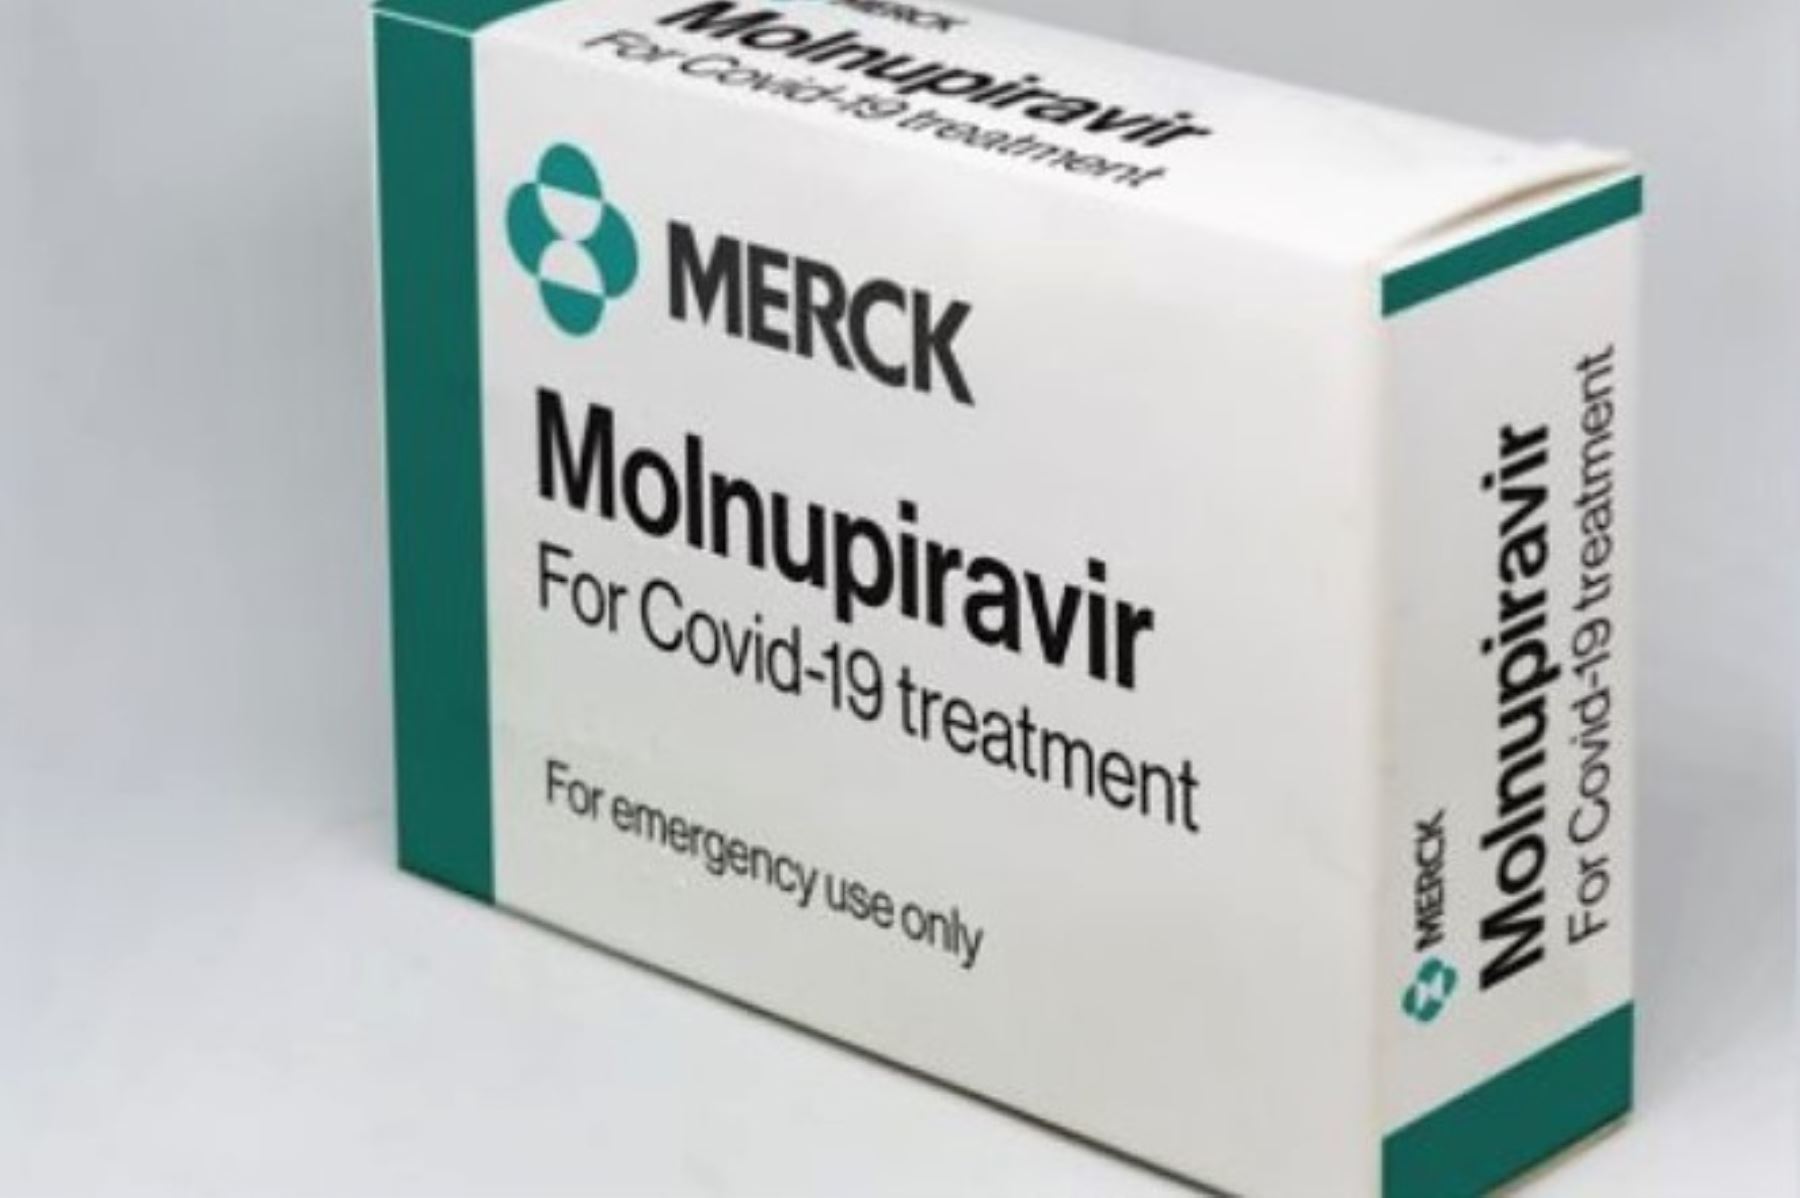 El molnupiravir ha sido aprobado para uso de emergencia contra la covid-19 en varios países.